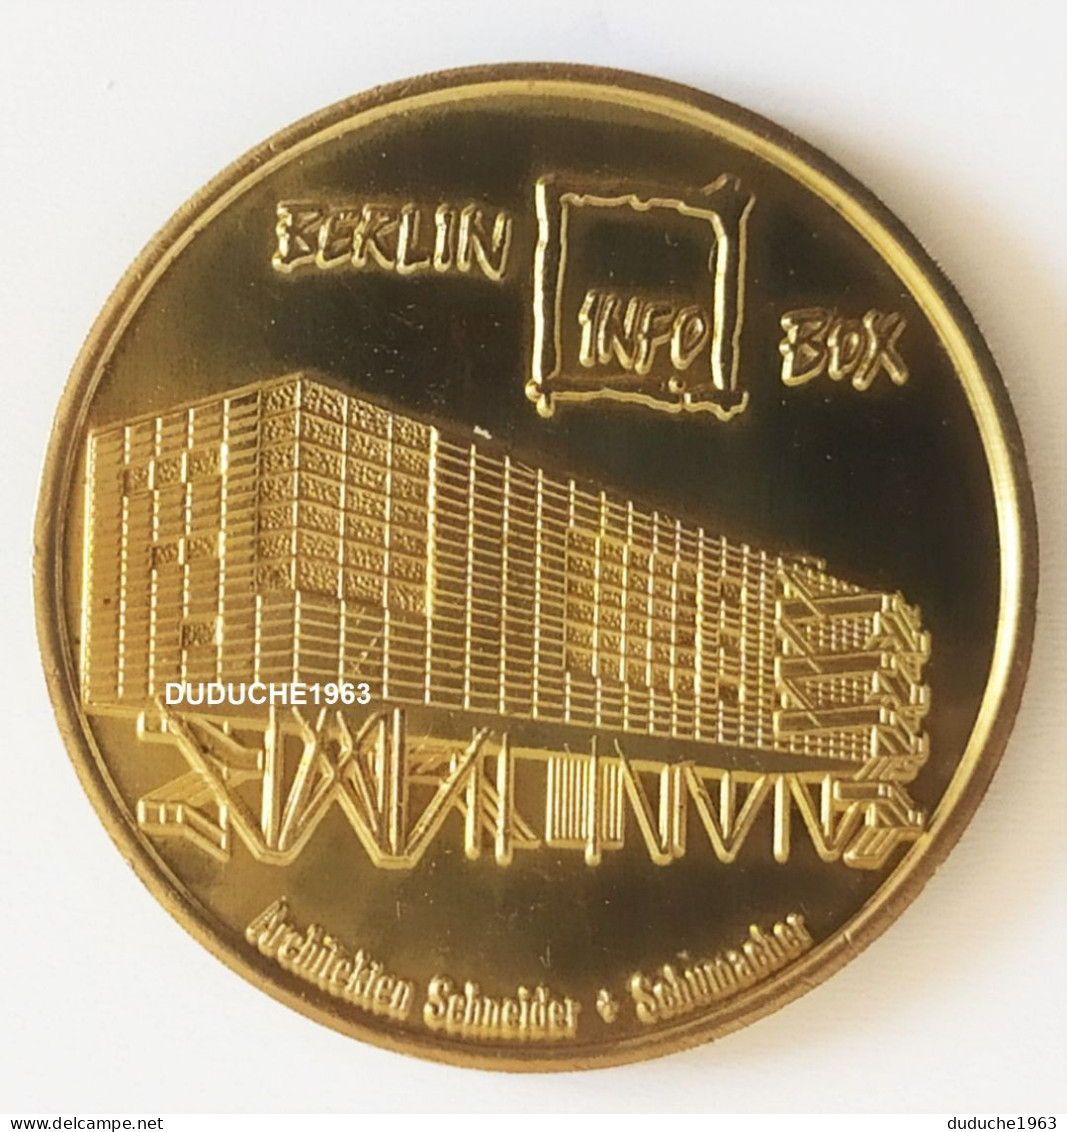 Monnaie De Paris. Allemagne - Berlin - Globe Taler Infobox Fernsehturm 1997/1998 - Sin Fecha